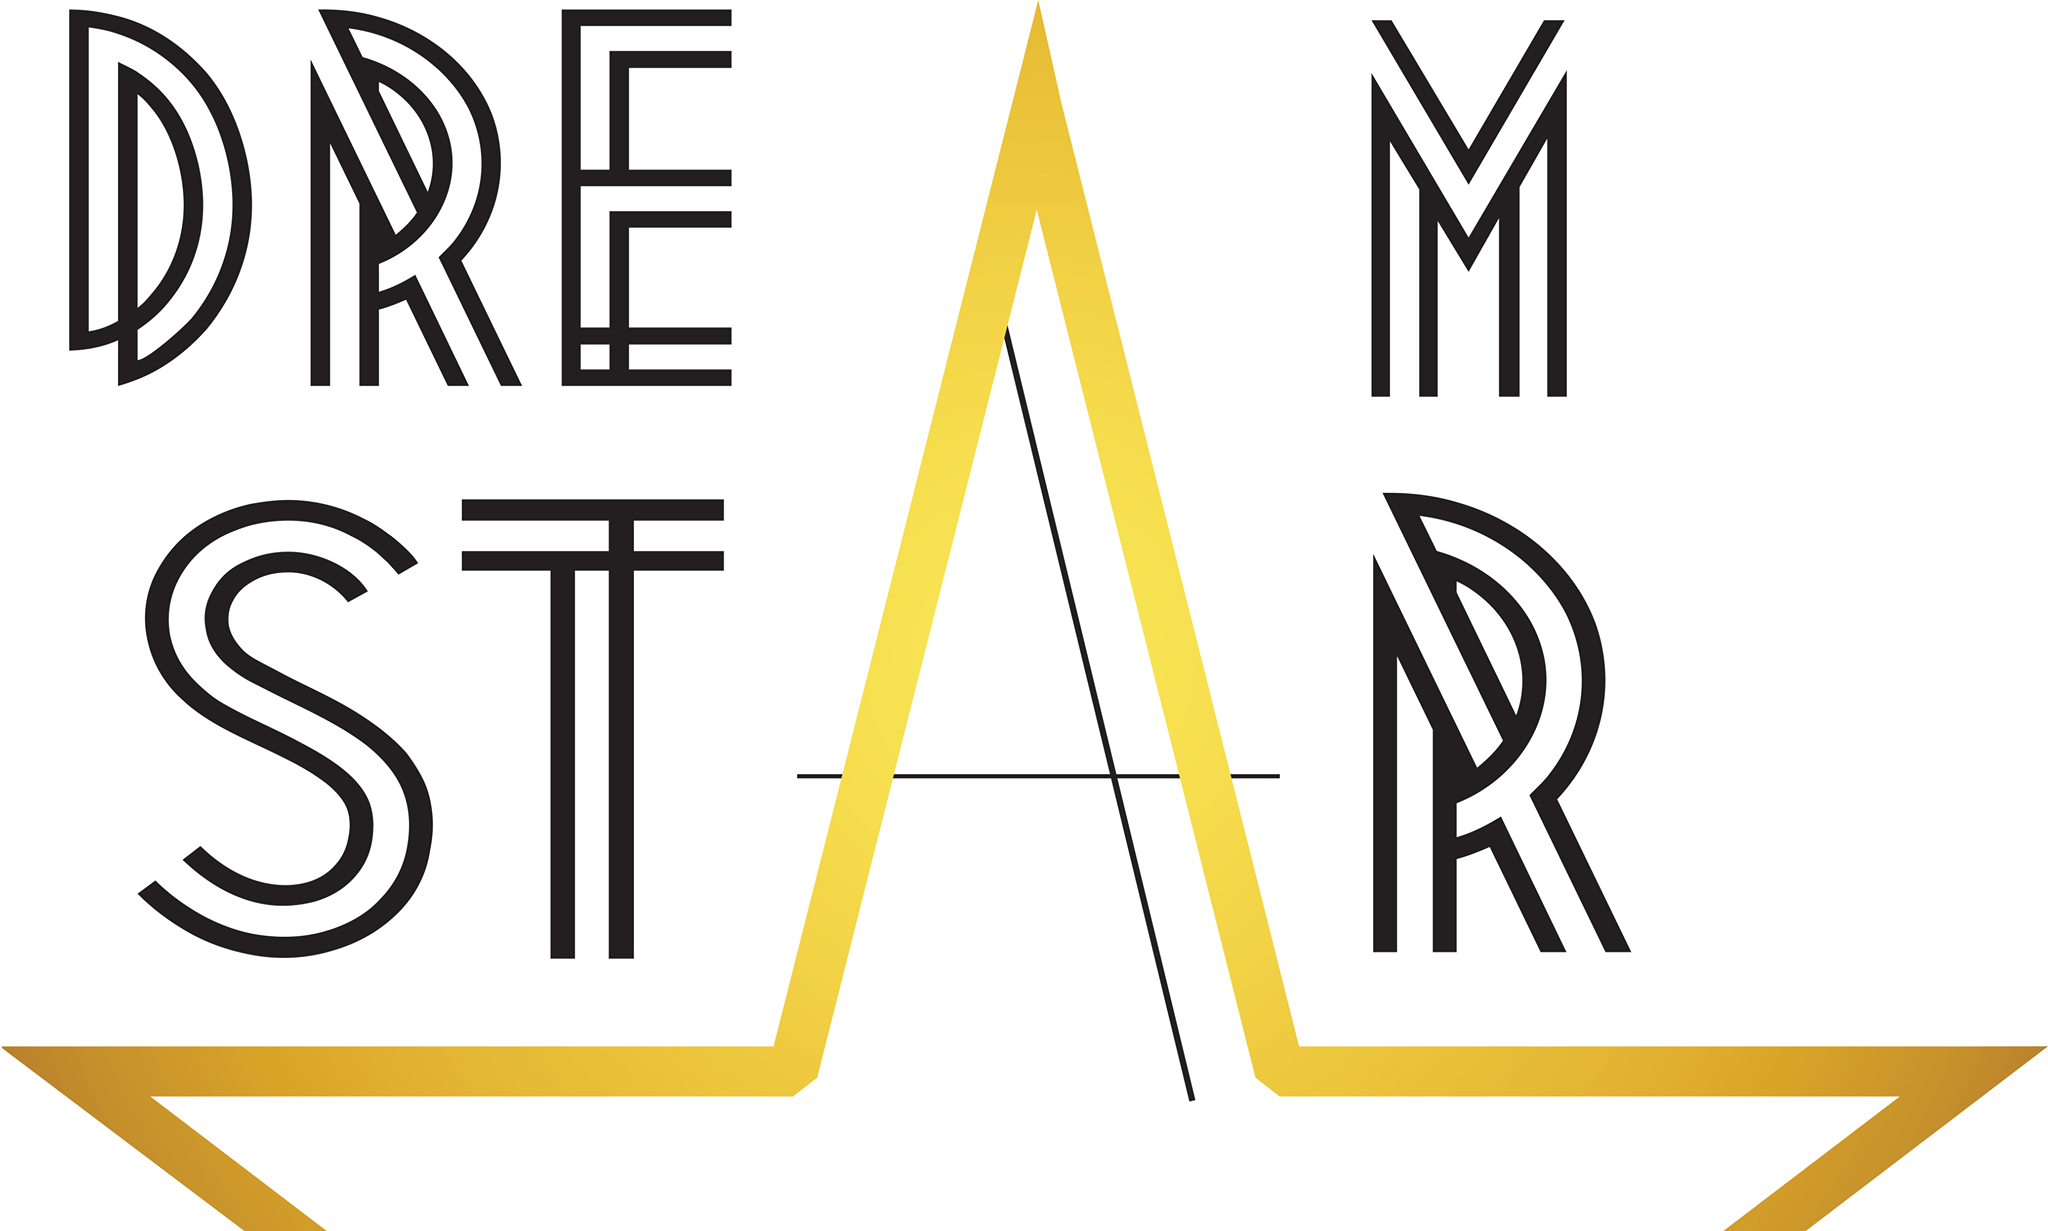 4. DreamStar